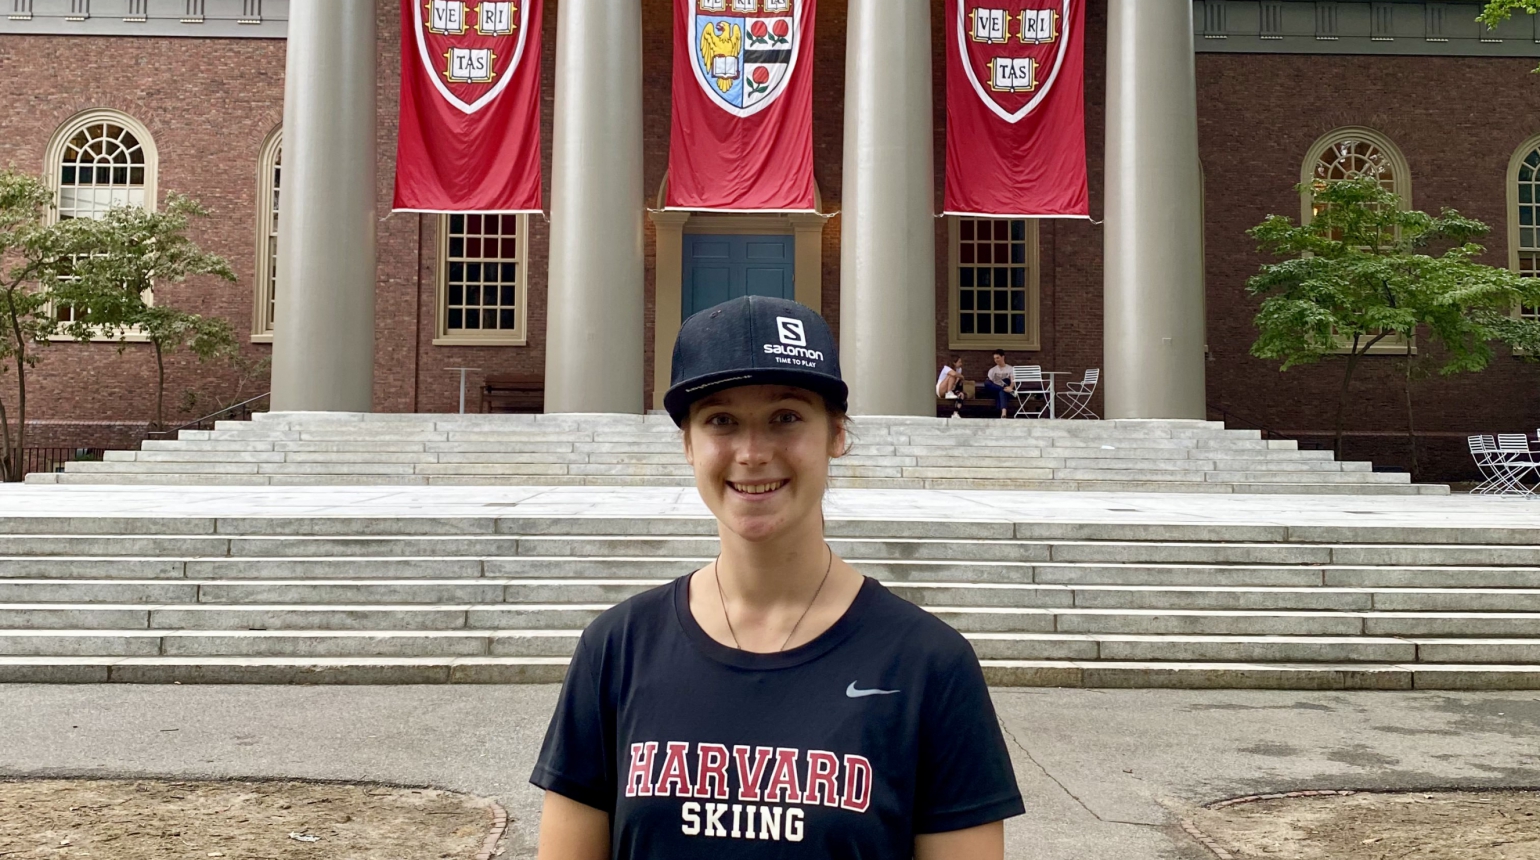 Zazie Huml o studiu na Harvardu: Bude to výzva, ale moc se těším